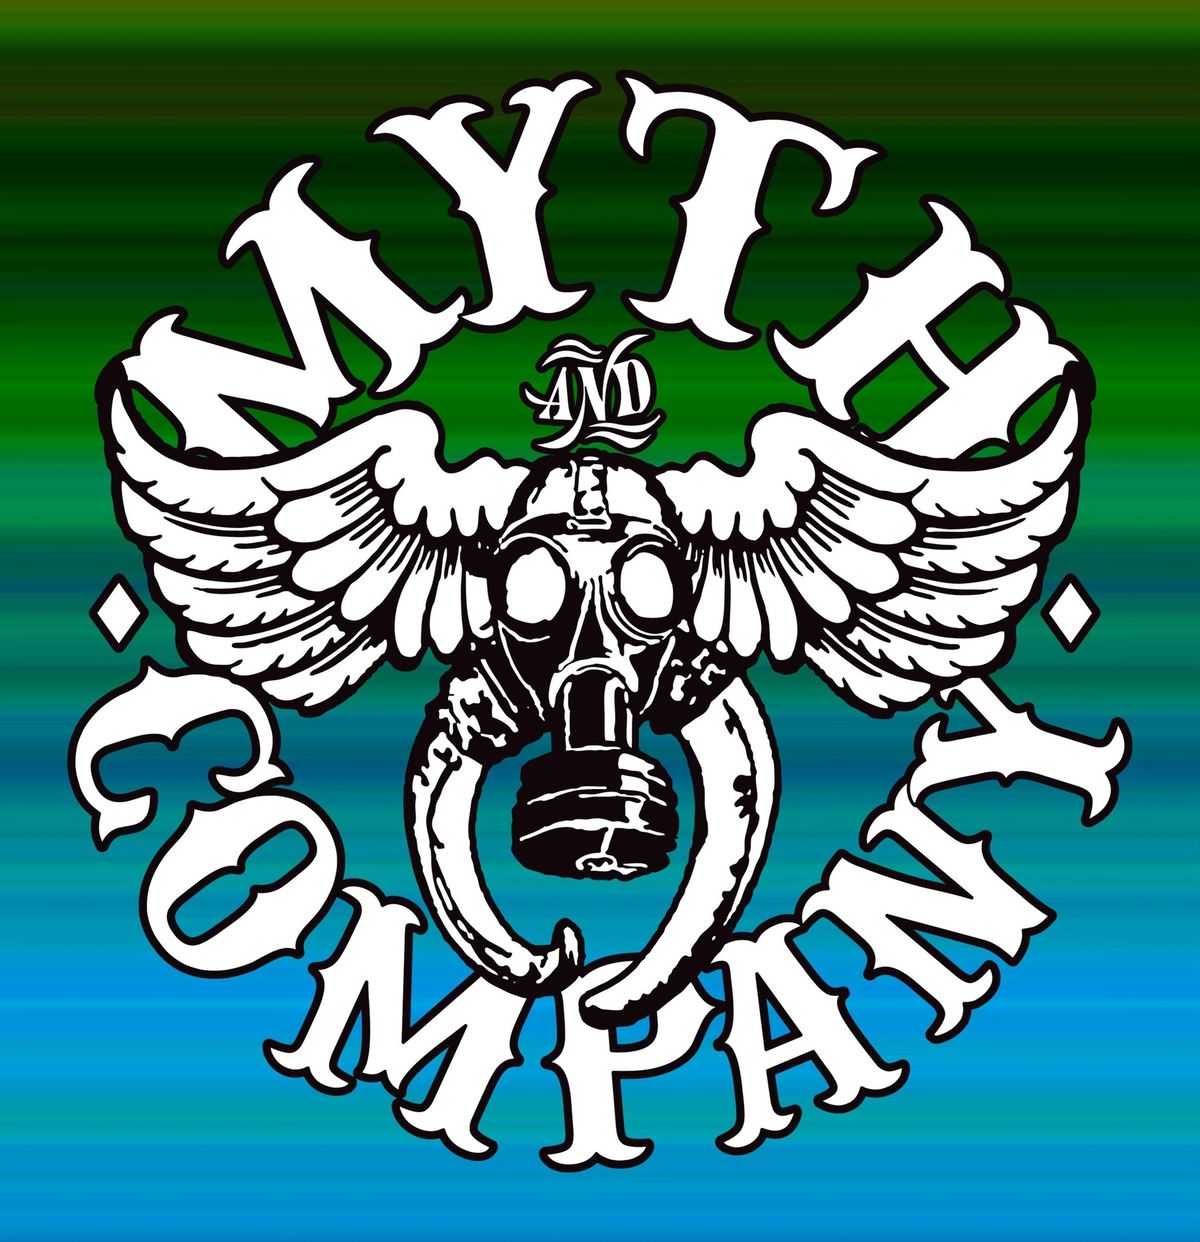 MYTH & COMPANY at the Club! 